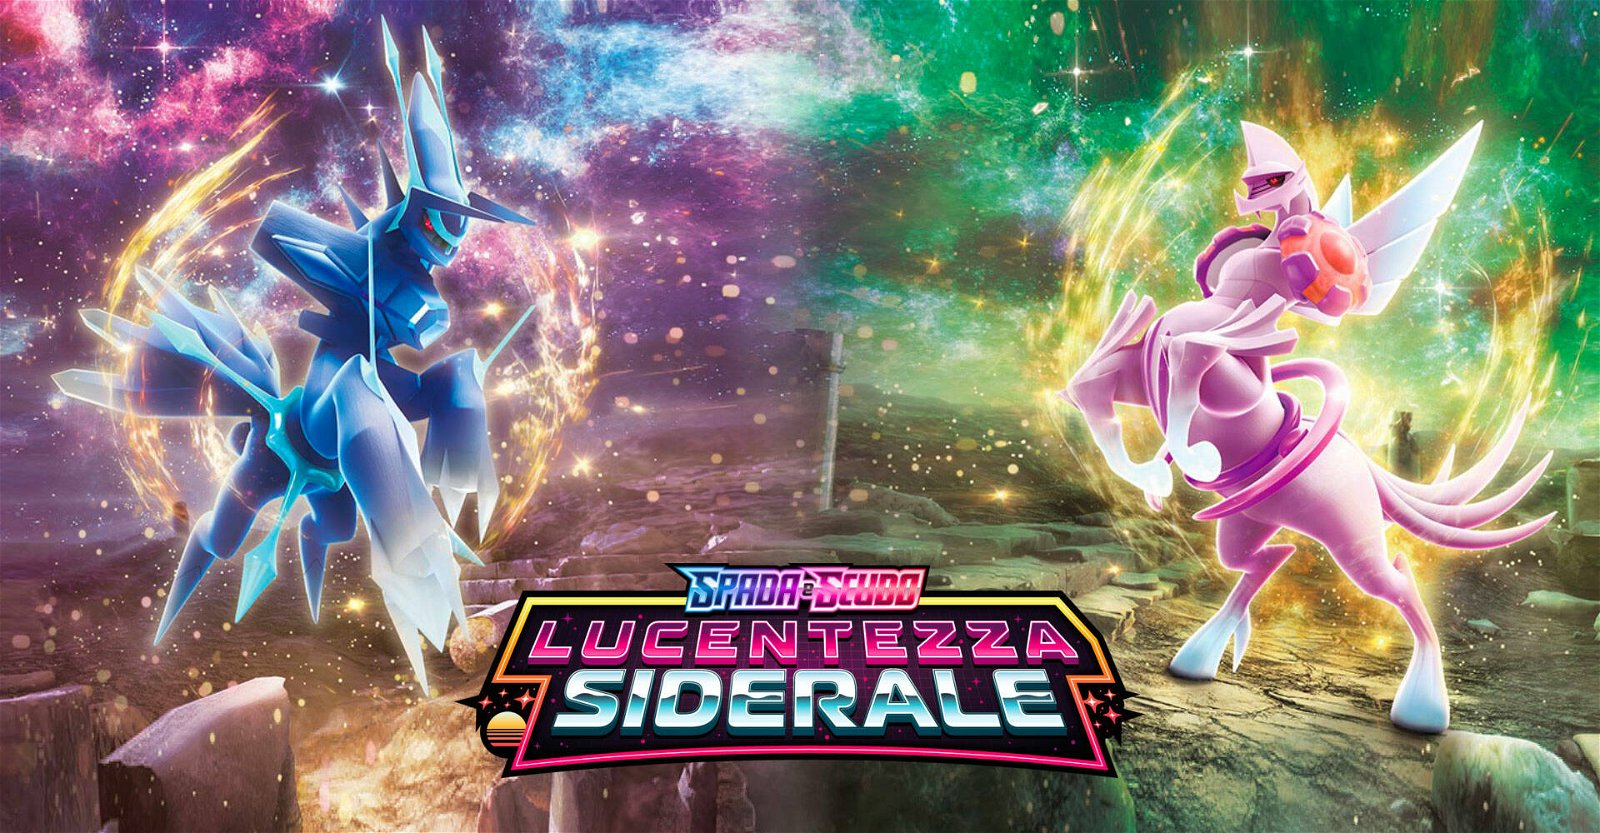 Pokémon Spada e Scudo - Lucentezza Siderale, la card preview in esclusiva